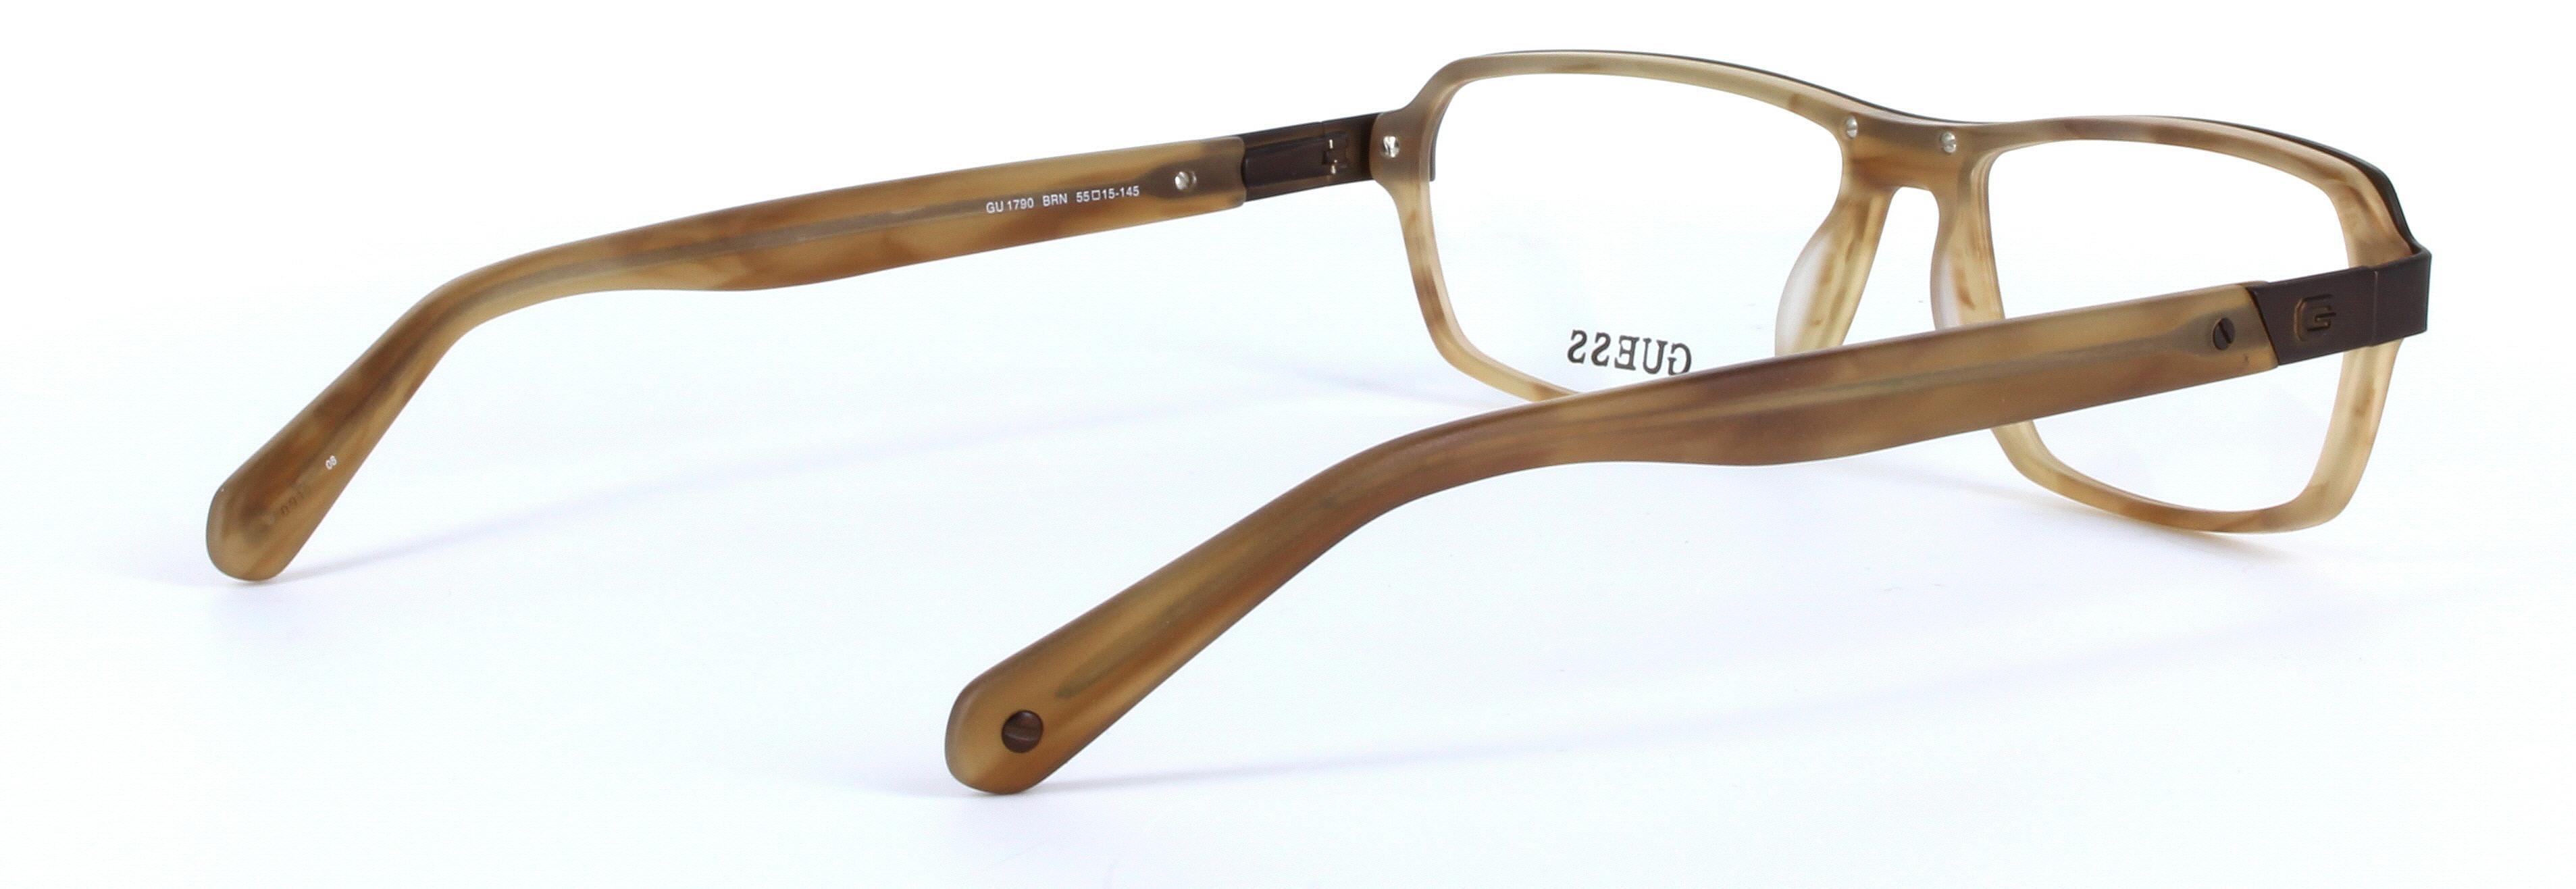 GUESS (GU1790-BRN) Brown Full Rim Rectangular Acetate Glasses - Image View 4